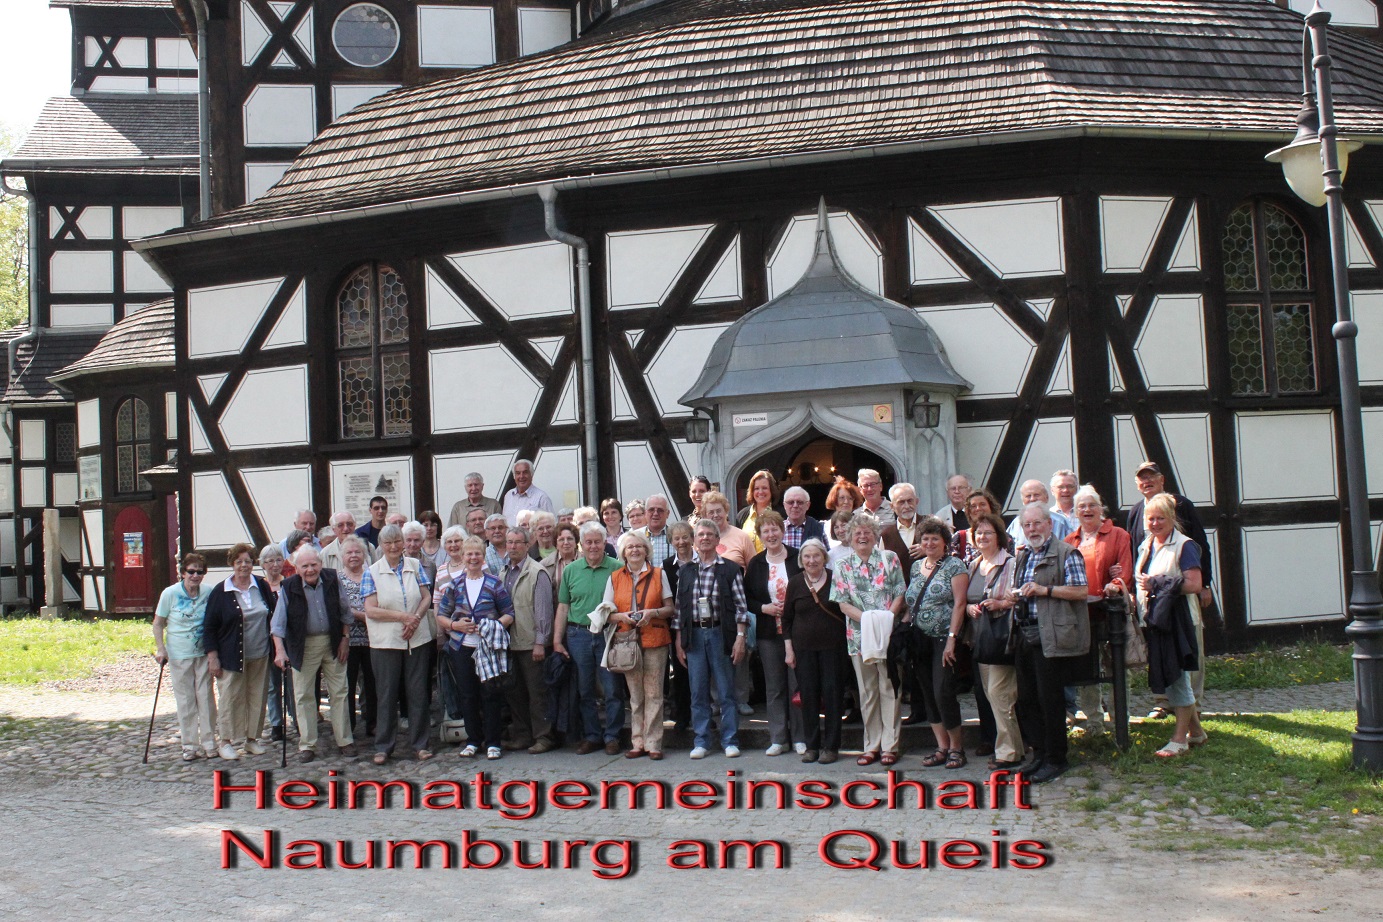 Organizacja "Heimatgemeinschaft  Naumburg am Queis" życzy Wesołych Świąt